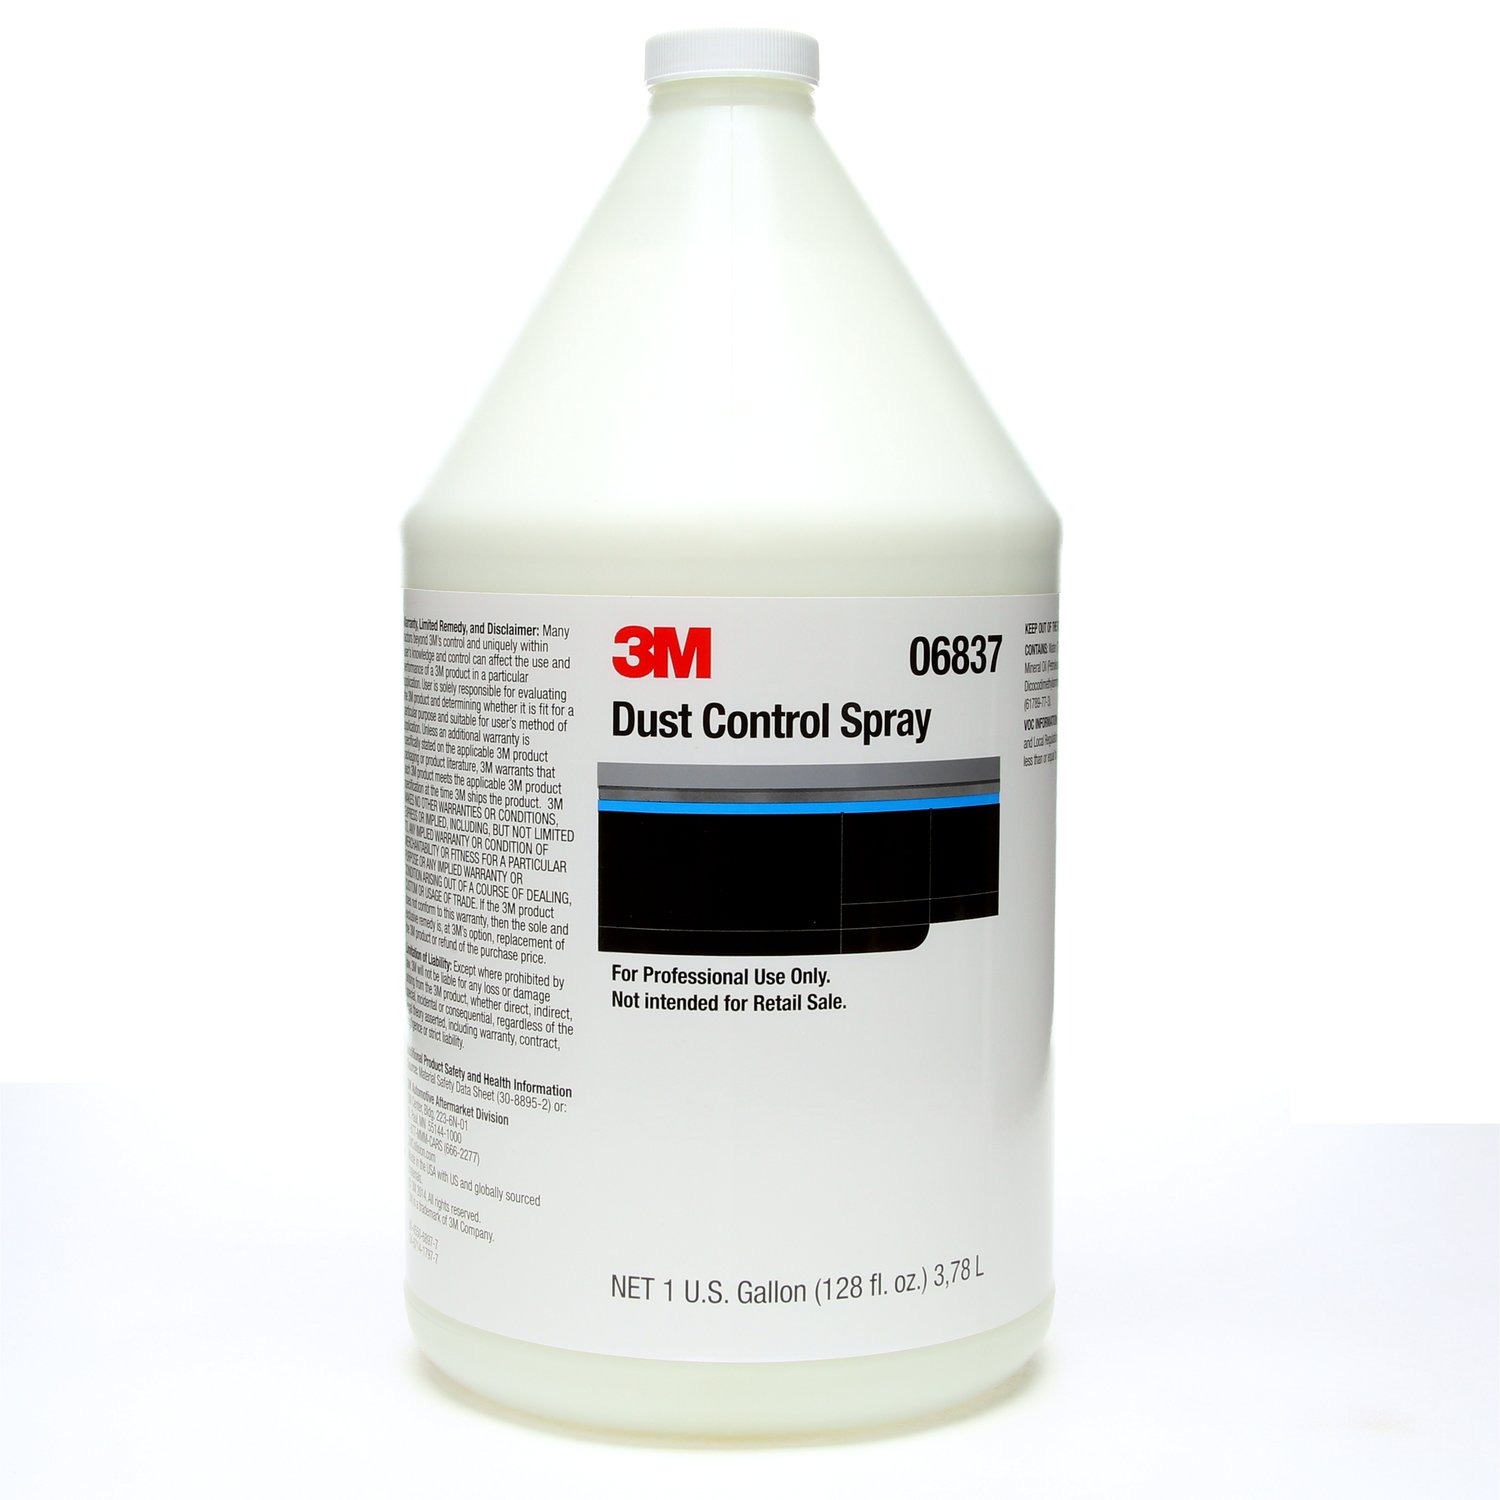 7000120435 - 3M Dust Control Spray, 06837, 1 gallon, 4 per case